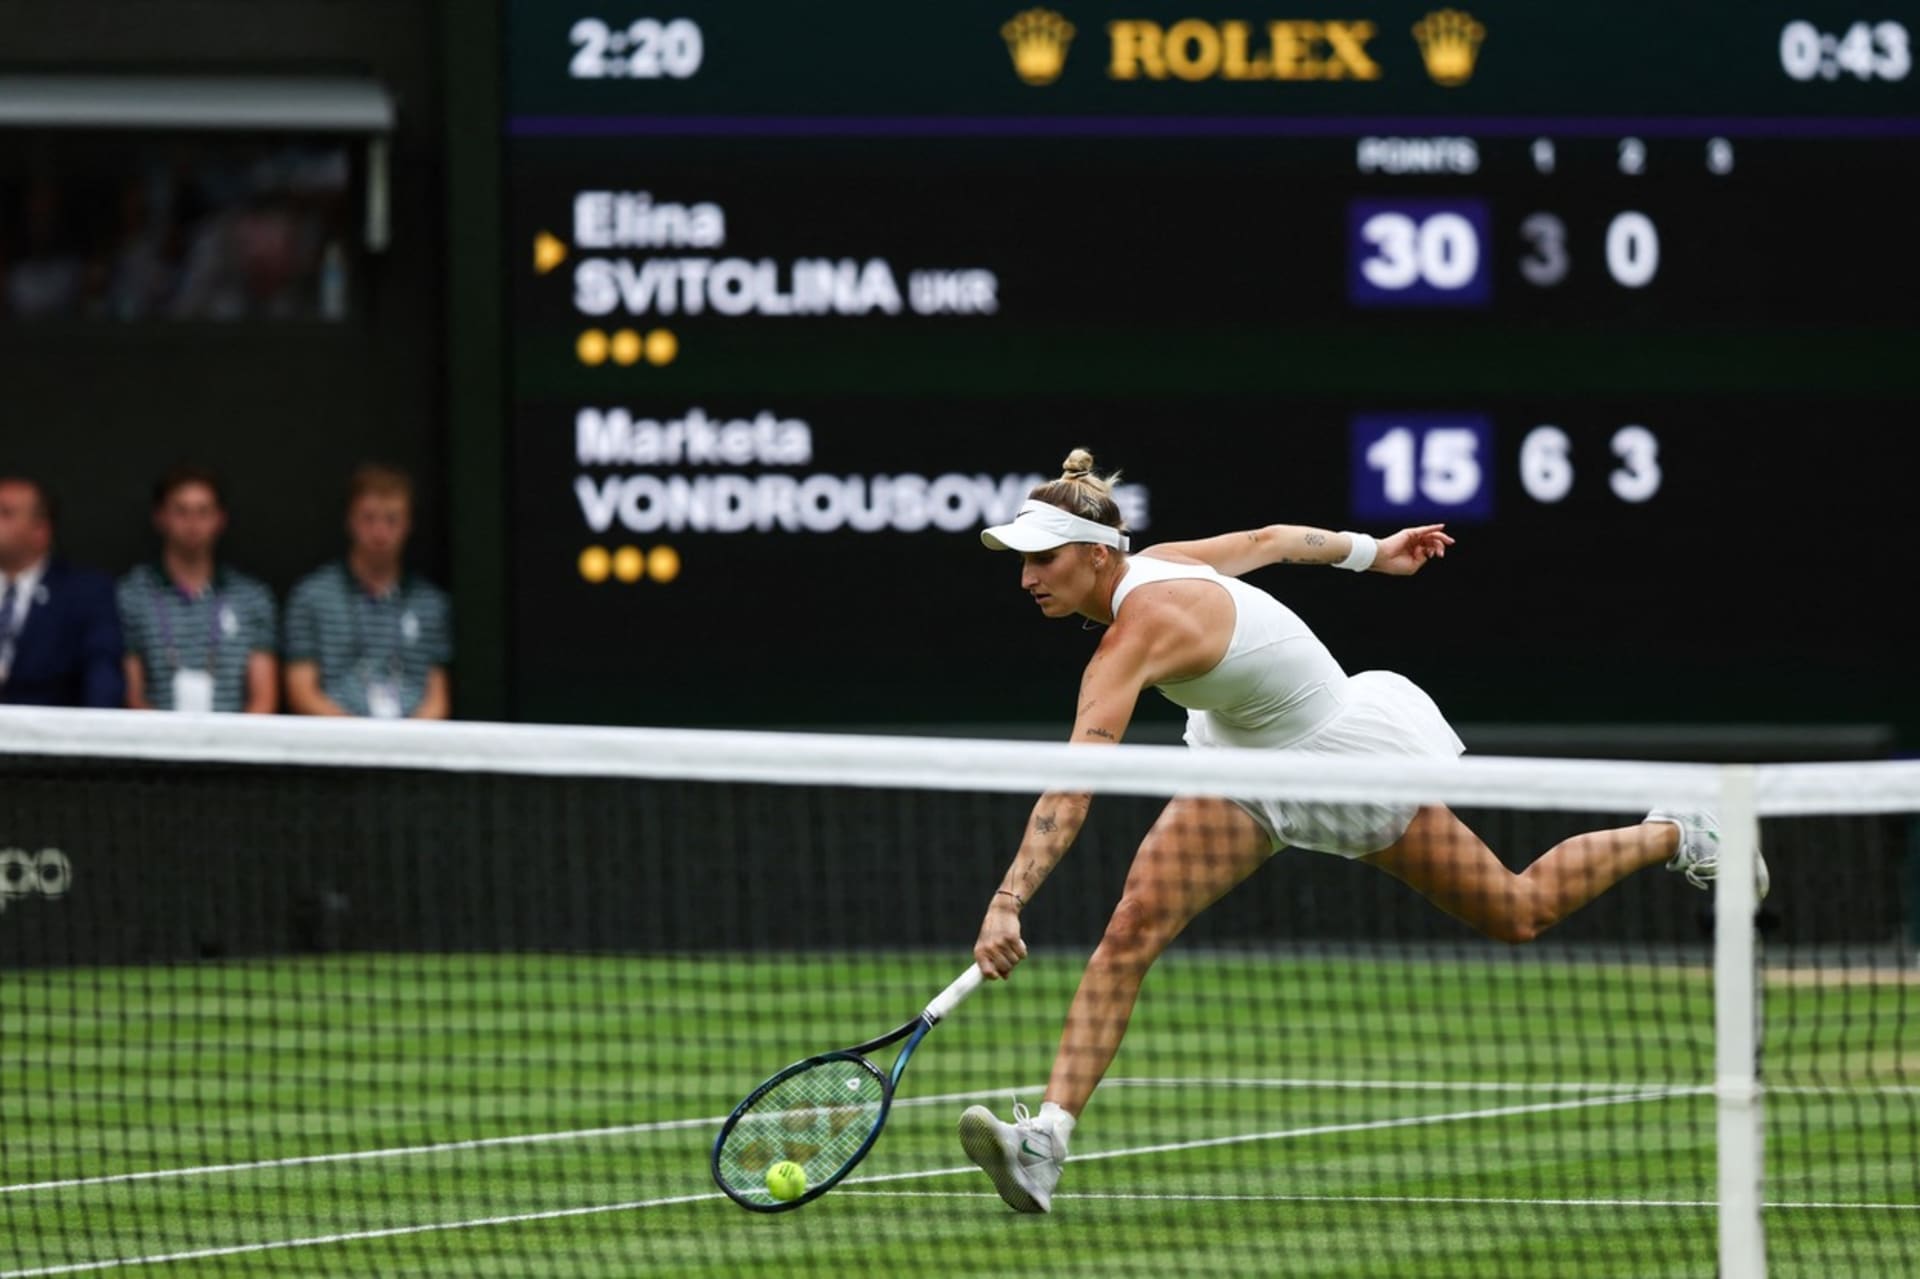 Vondroušová v semifinále porazila ukrajinskou tenistku Svitolinu a zahraje si finále Wimbledonu.